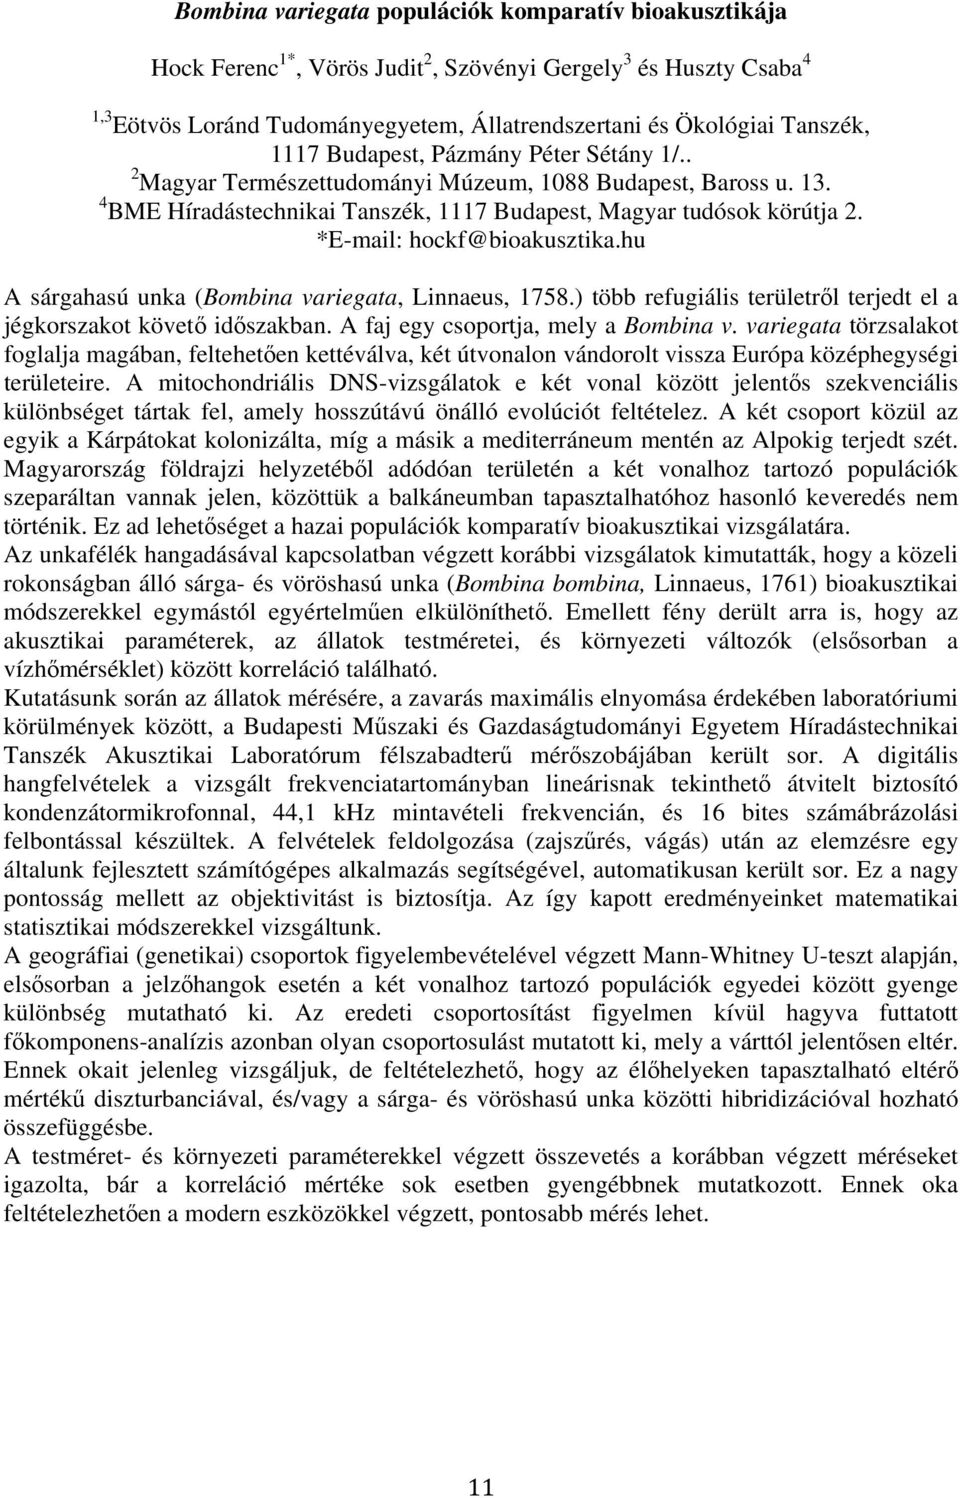 *E-mail: hockf@bioakusztika.hu A sárgahasú unka (Bombina variegata, Linnaeus, 1758.) több refugiális területrıl terjedt el a jégkorszakot követı idıszakban. A faj egy csoportja, mely a Bombina v.